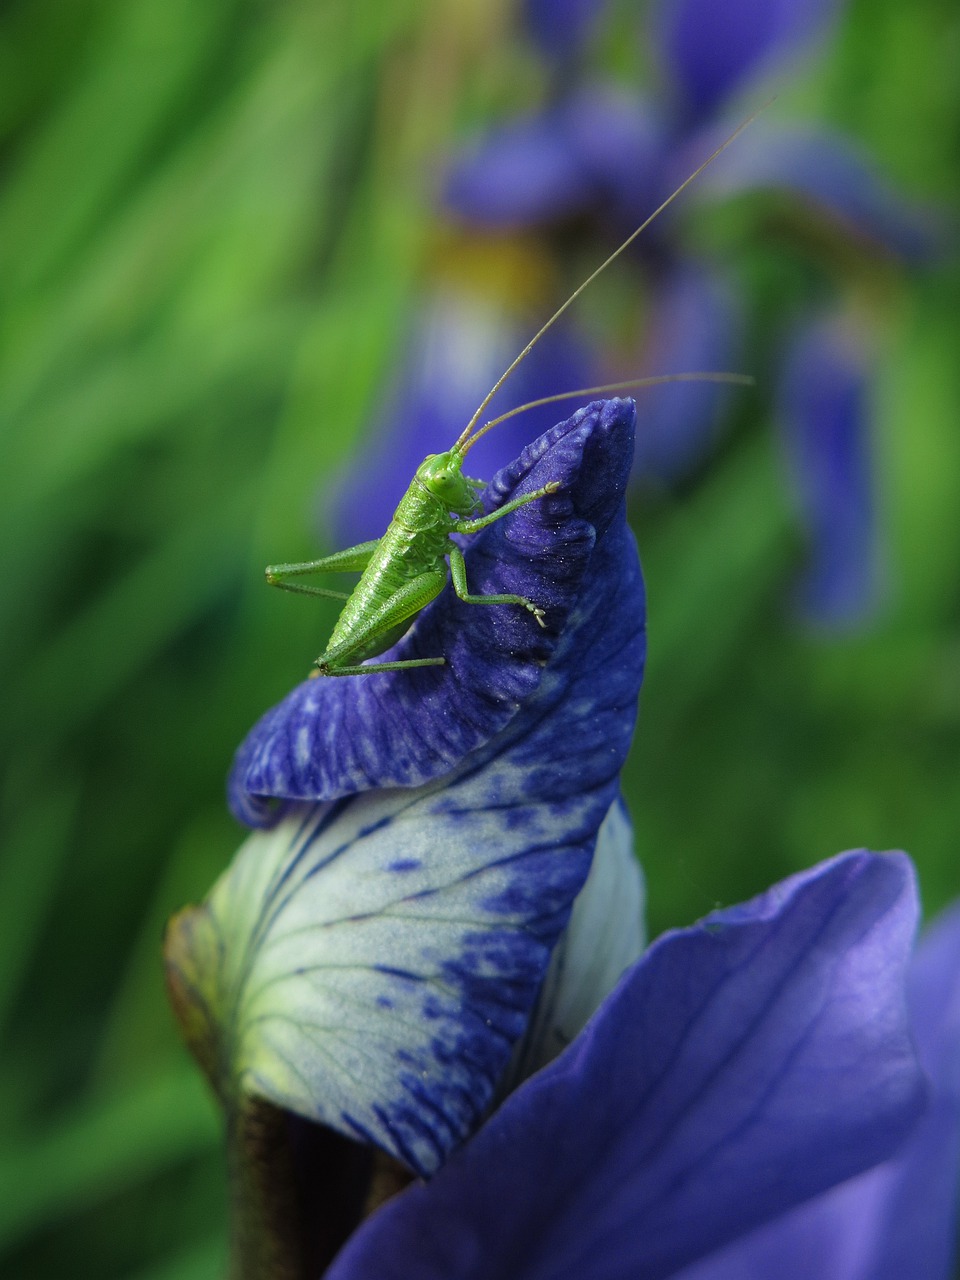 long probe shrink  grasshopper  animal free photo